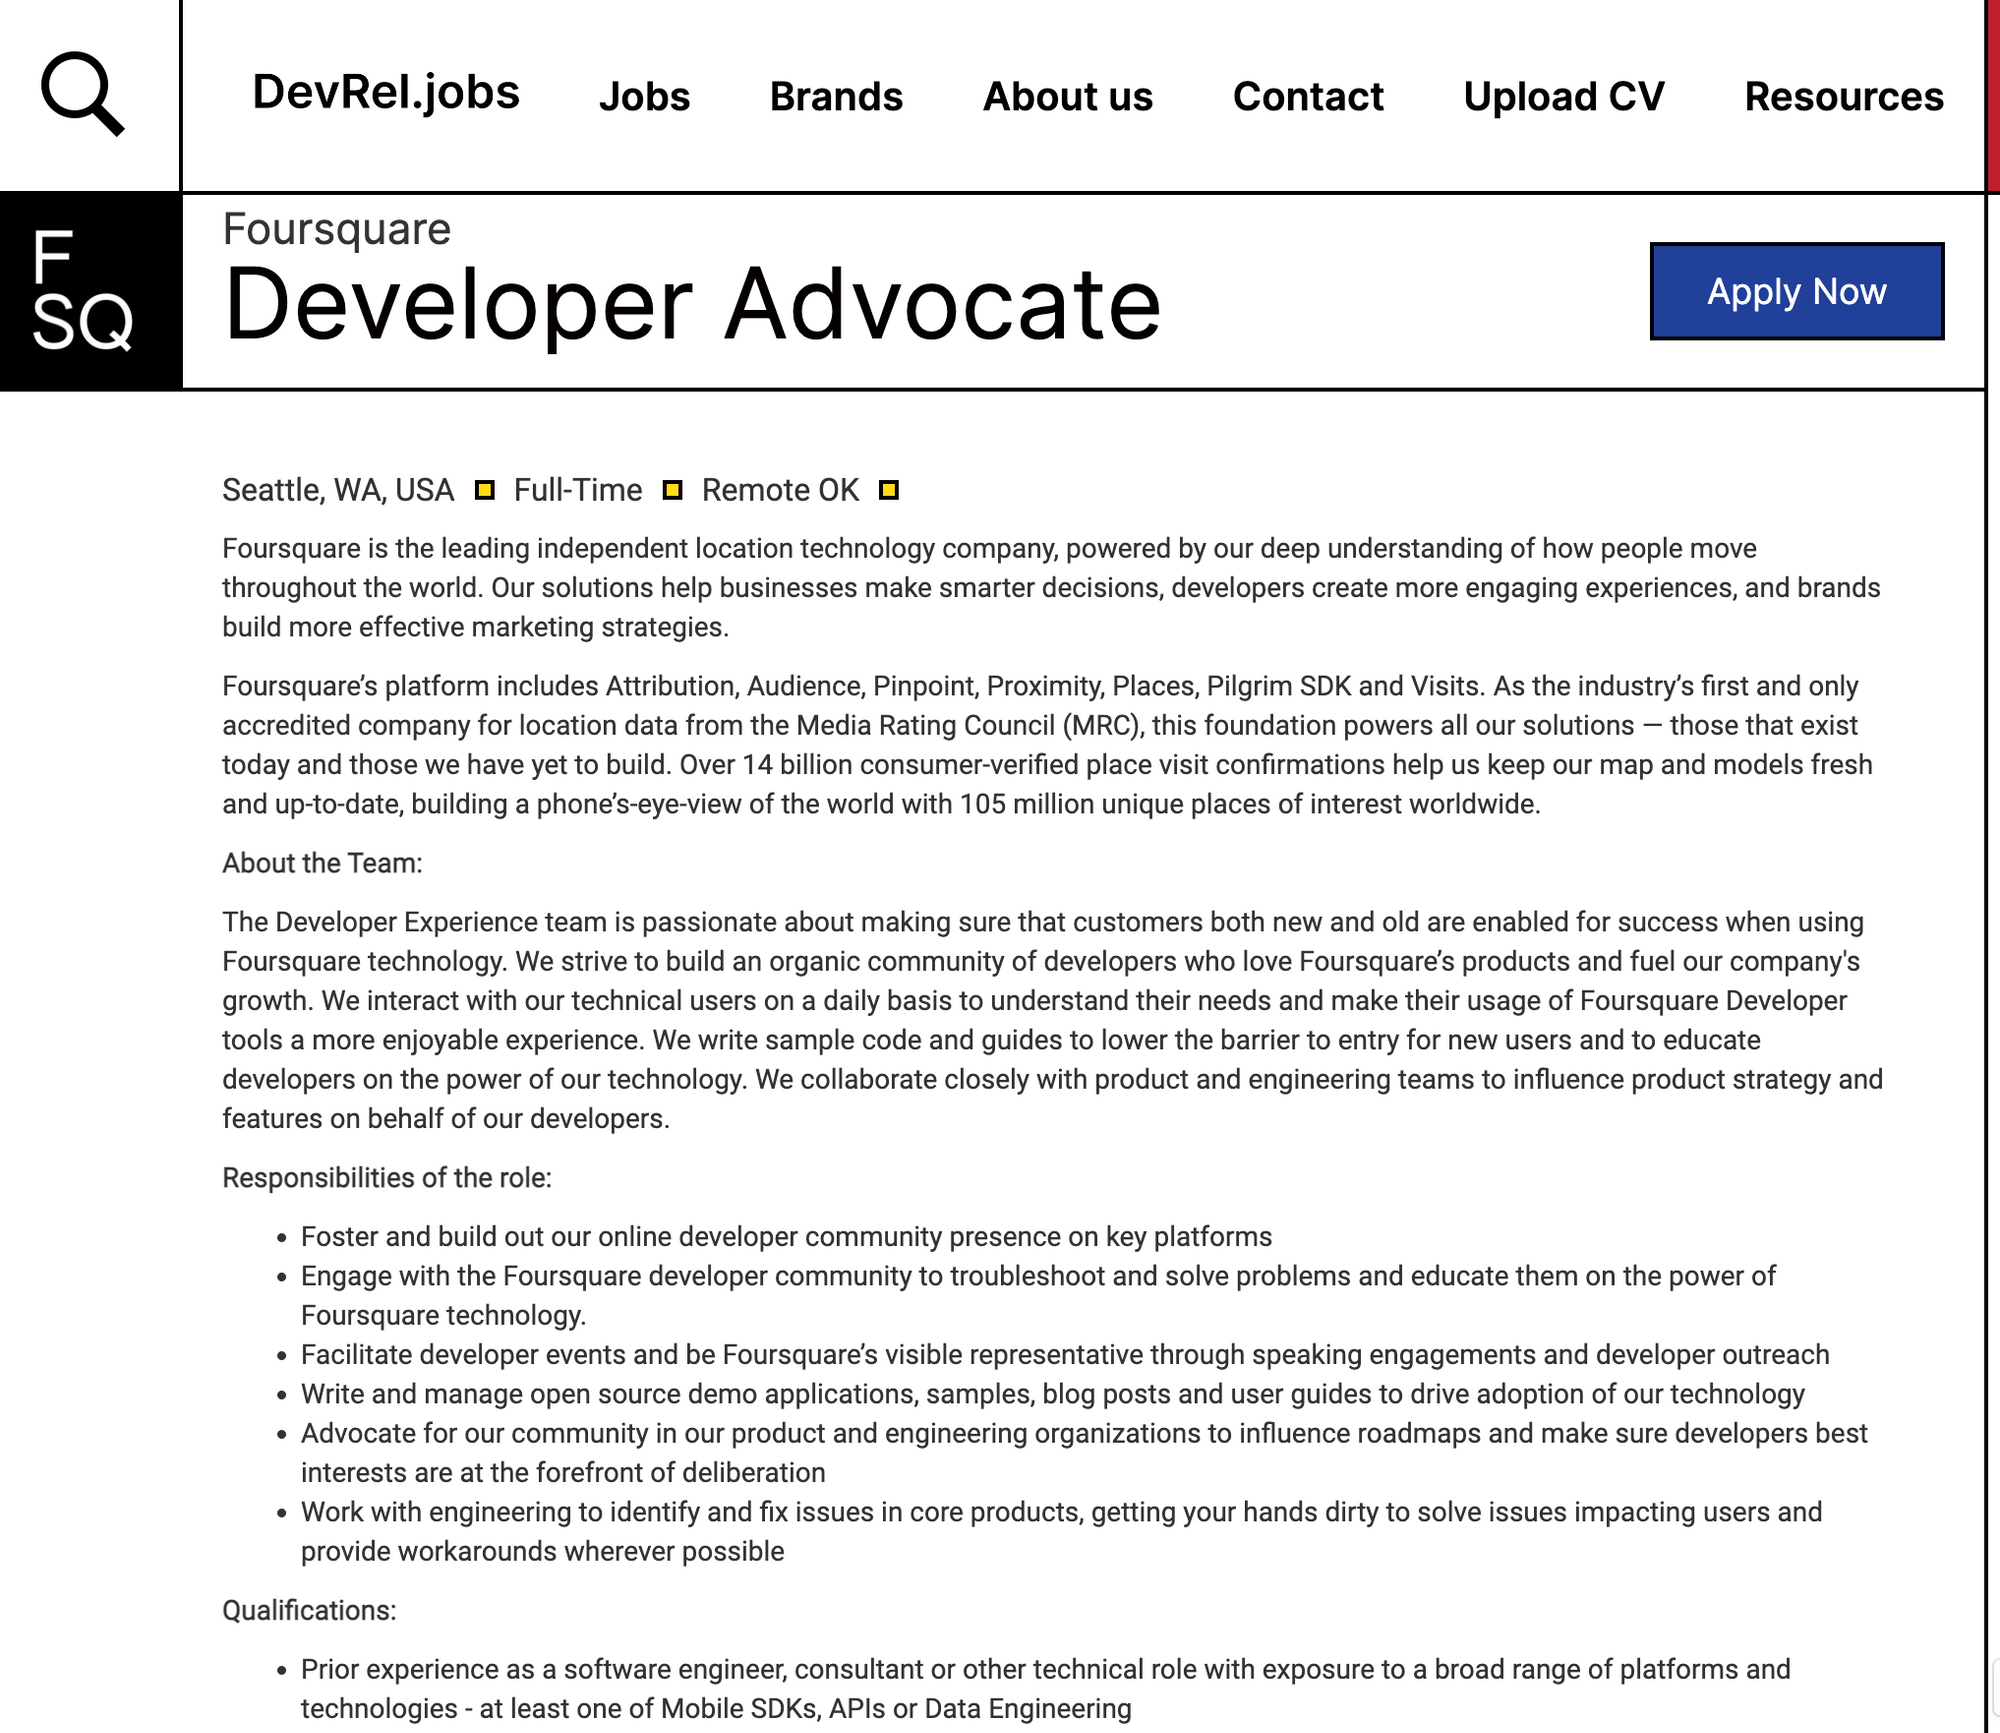 Developer advocate at FourSquare